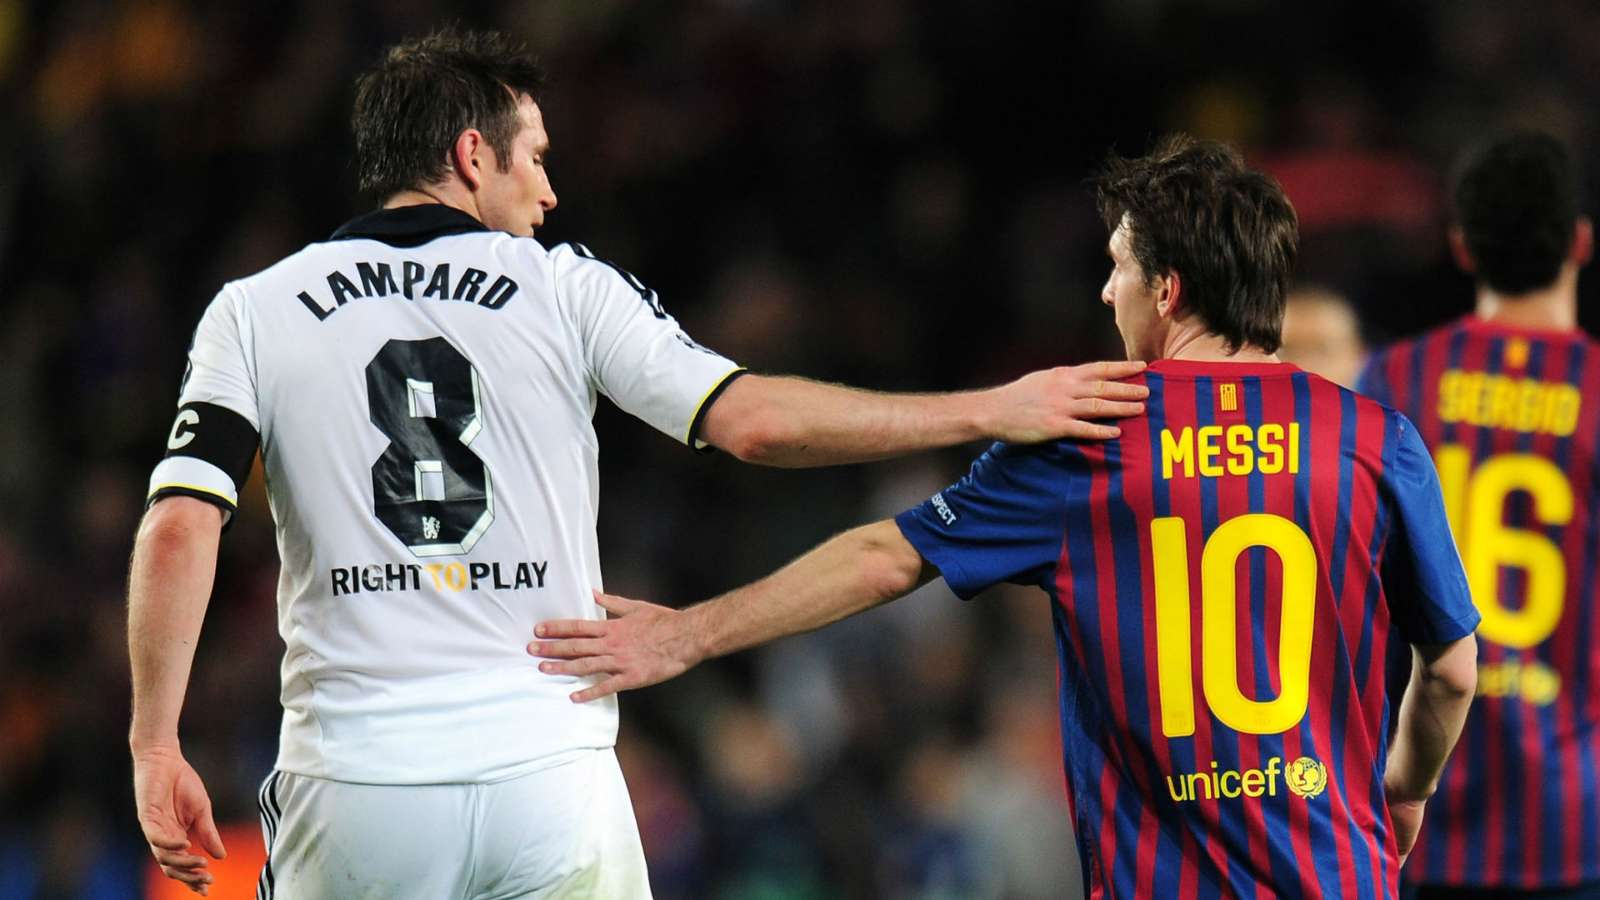 So tài giữa Messi Xavi Iniesta là một trong những trận đấu đầy kịch tính và hấp dẫn nhất. Hãy ngắm nhìn những bức ảnh đầy nghệ thuật này để cảm nhận màn đối mặt kinh điển giữa ba ngôi sao hàng đầu của Barcelona.